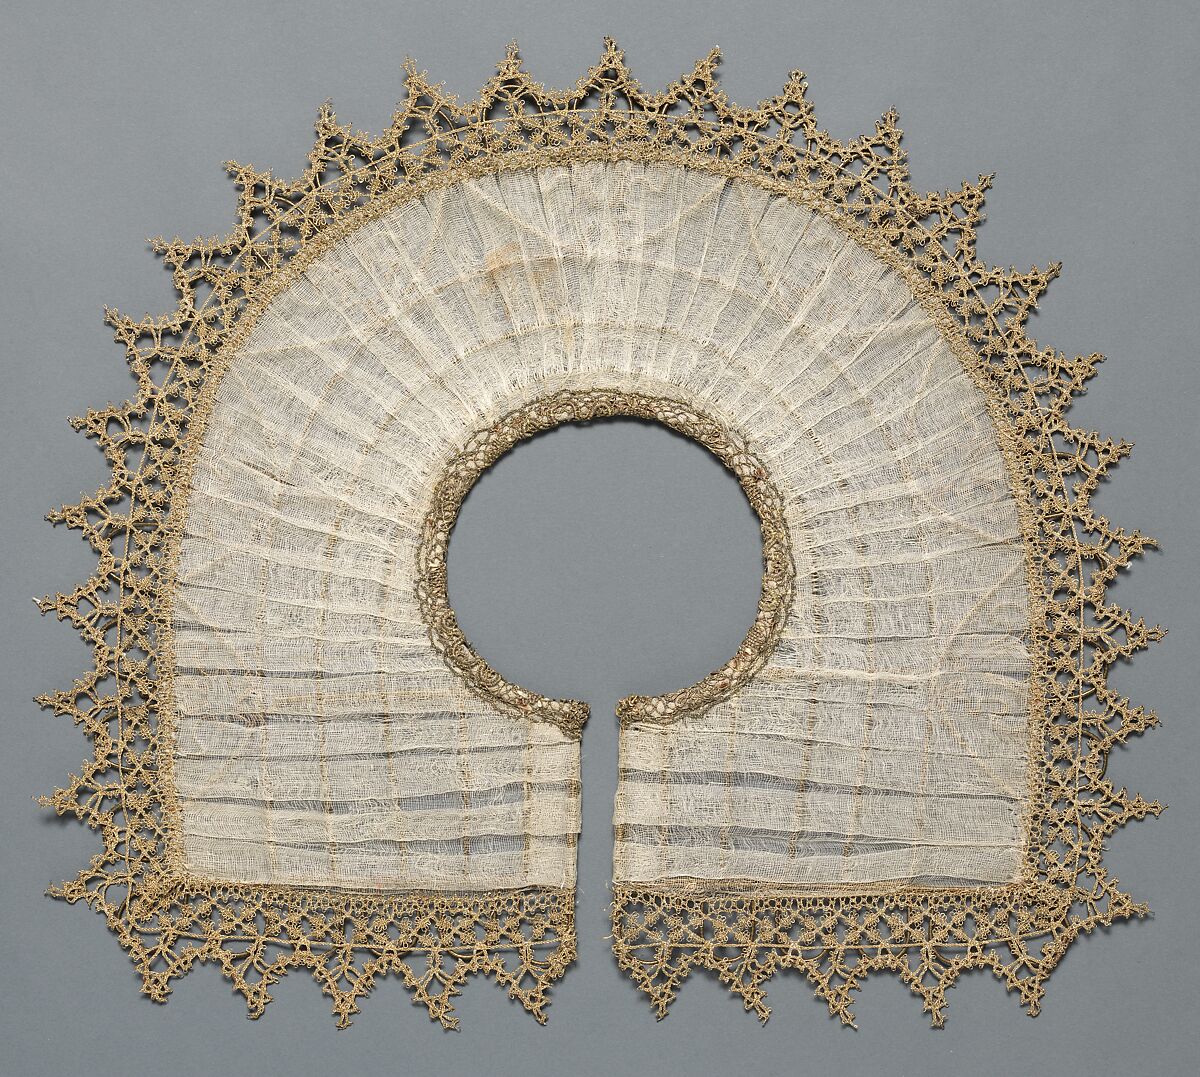 Rebato (collar), Metal-thread bobbin lace, wire, cotton, possibly French 